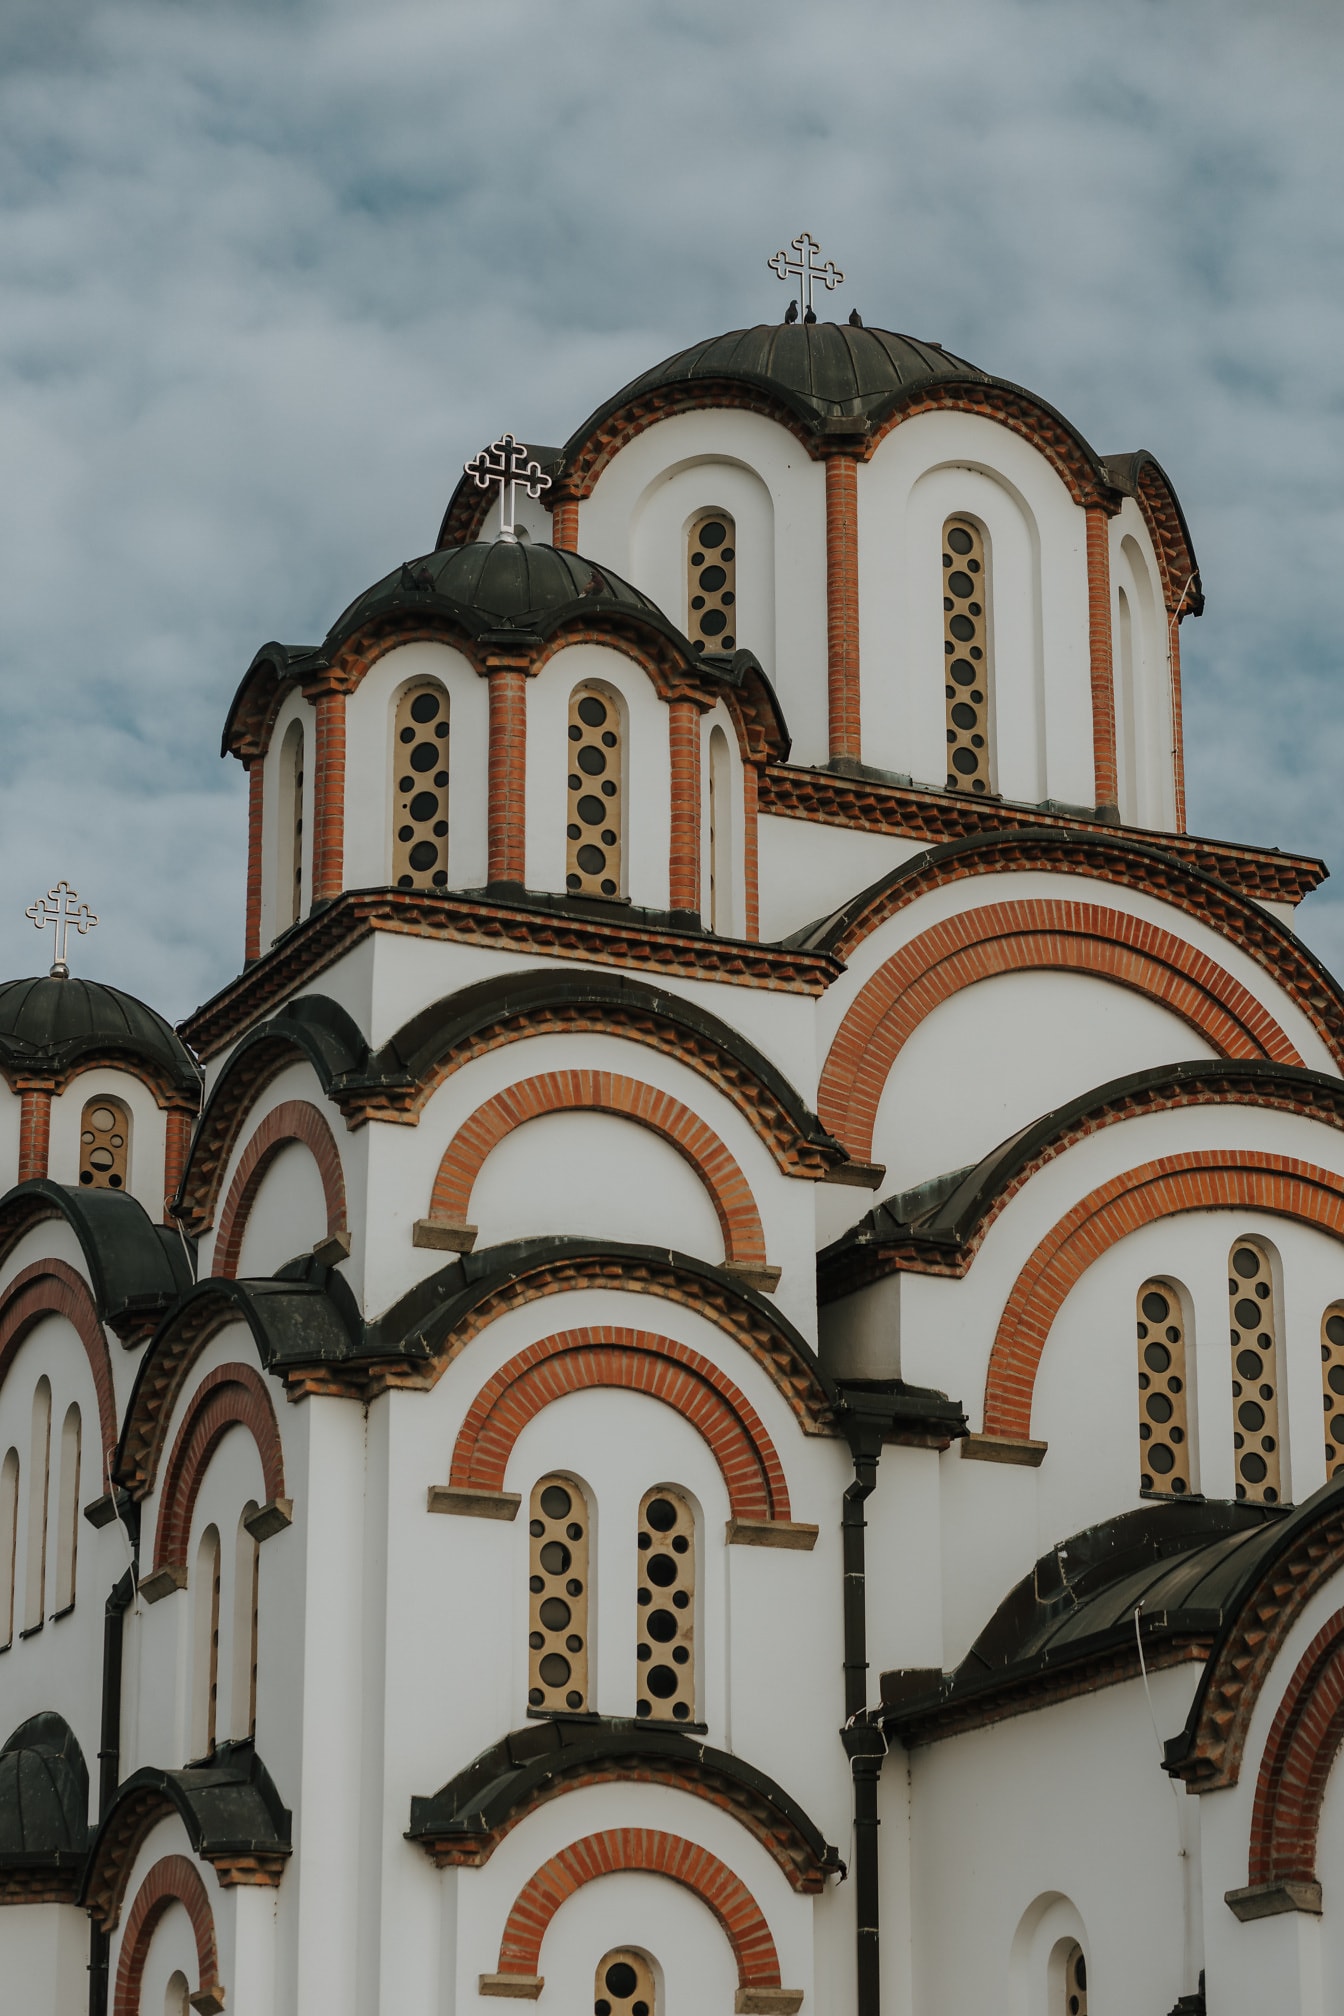 Veličanstvena pravoslavna ruska crkva u srednjovjekovnom bizantskom arhivskom stilu